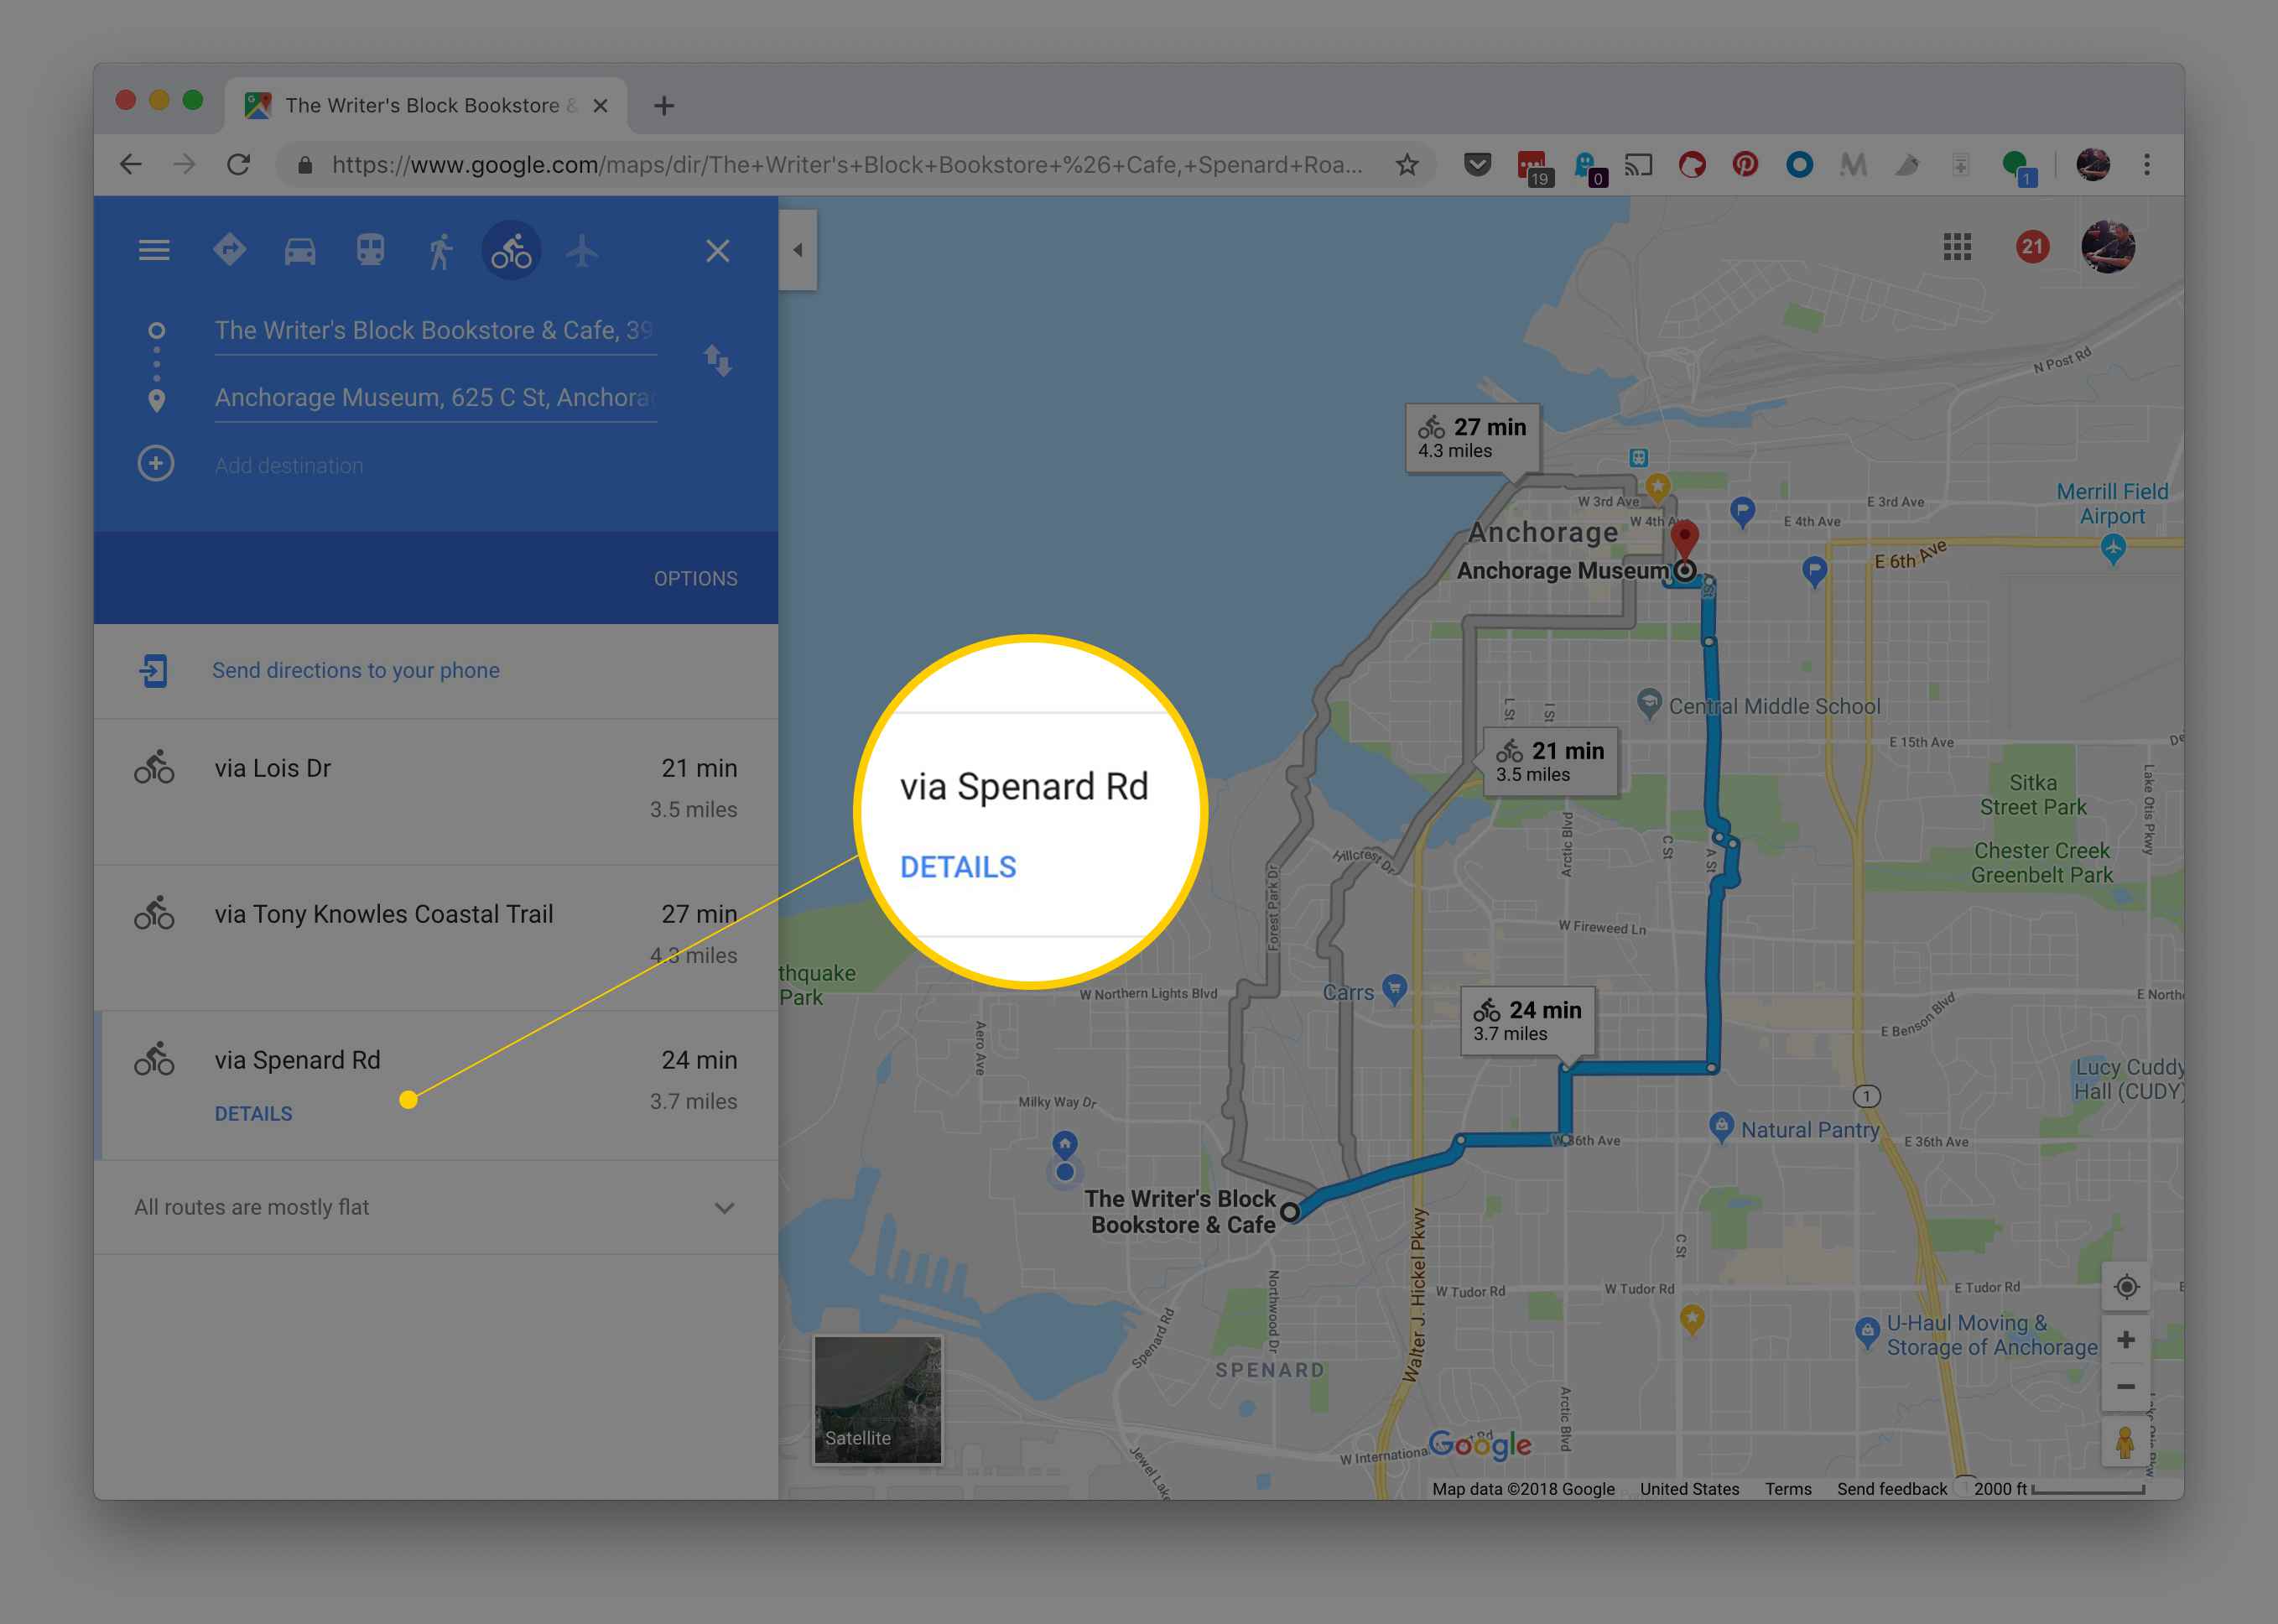 Trajeto alternativo no Google Maps para rotas de bicicleta